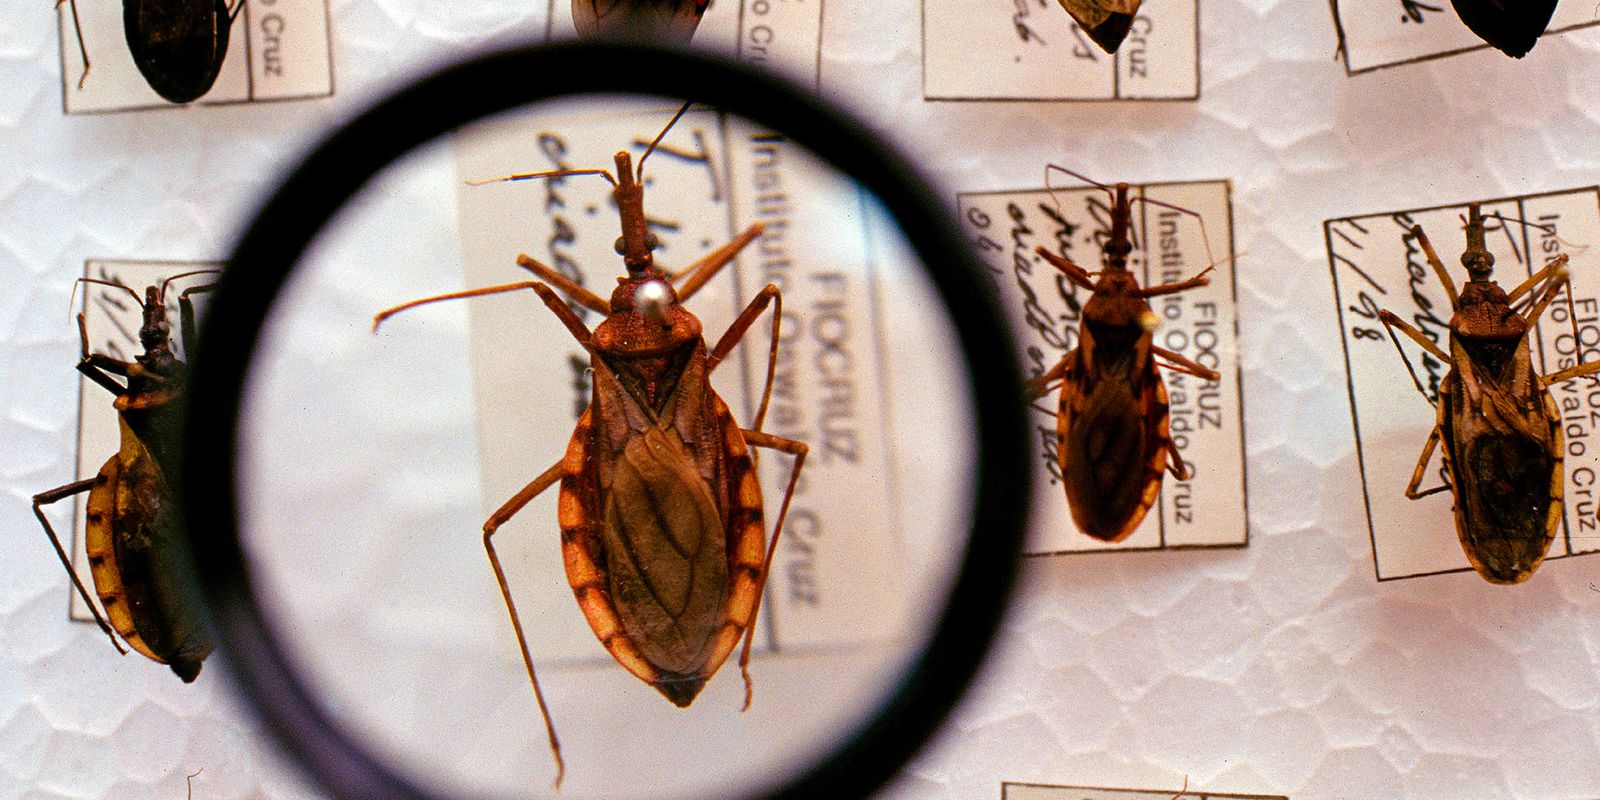 Doença de Chagas é uma doença infecciosa causada pelo inseto triatomíneo - Foto: Divulgação/Ministério da Saúde